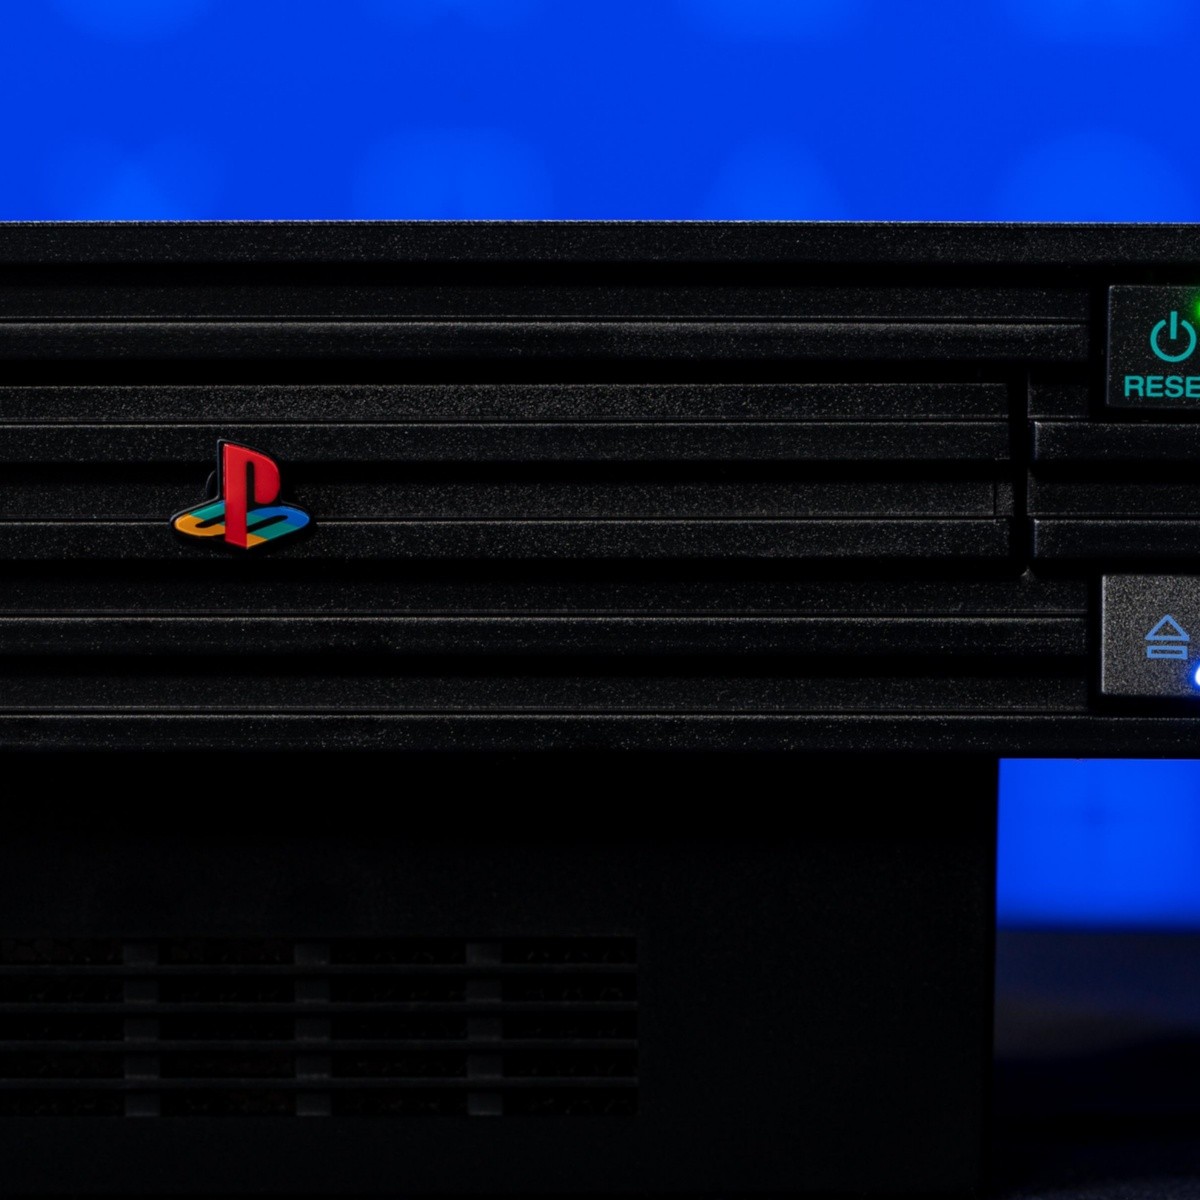 PlayStation 2: 20 años de la consola más vendida de la historia, TENDENCIAS